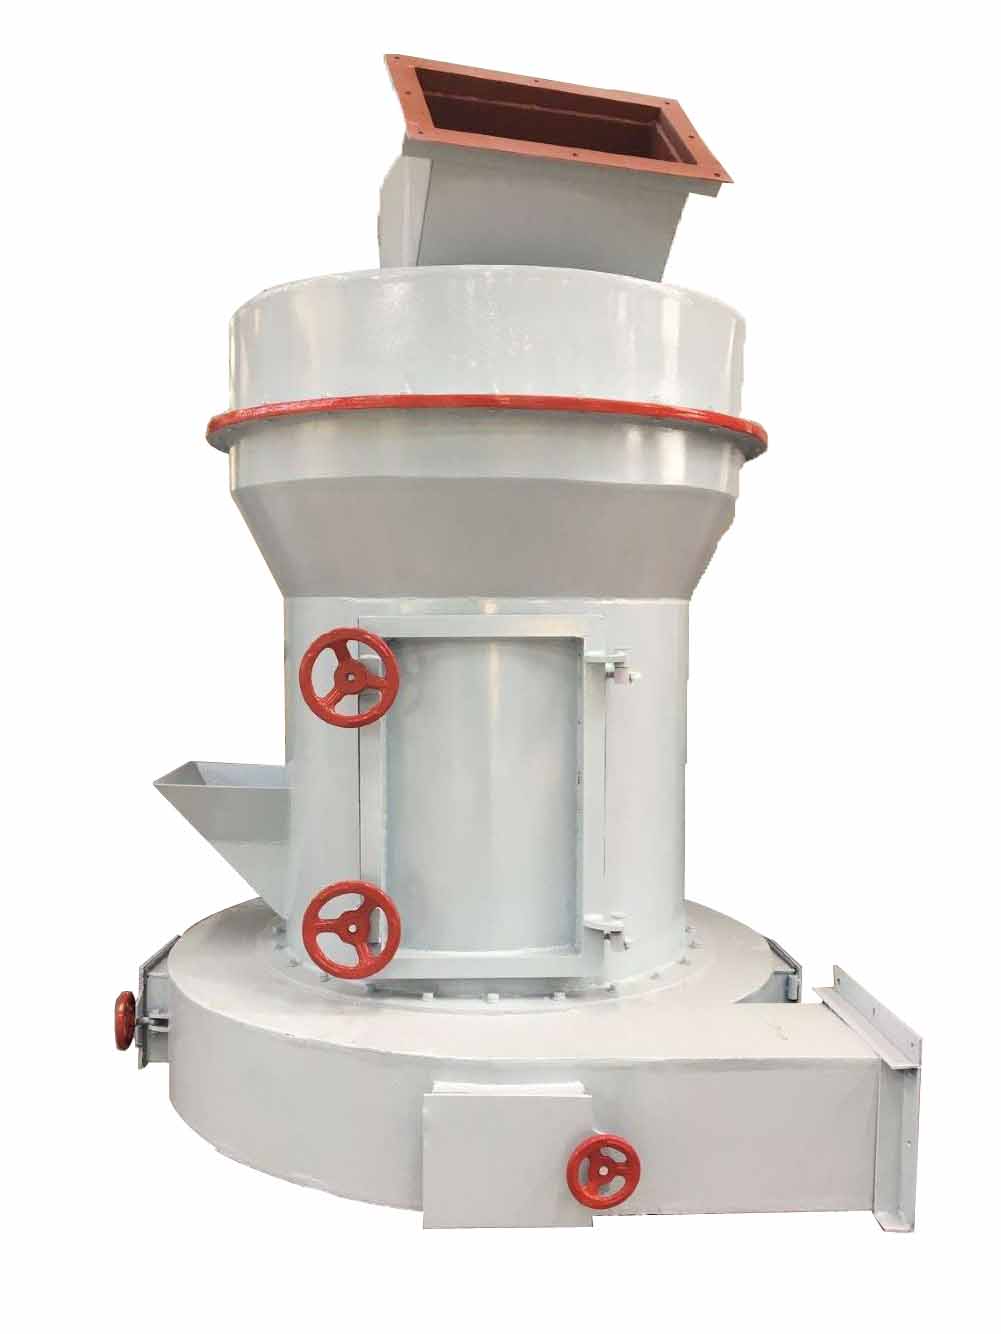 安全环保高效的磨粉设备-雷蒙磨粉机